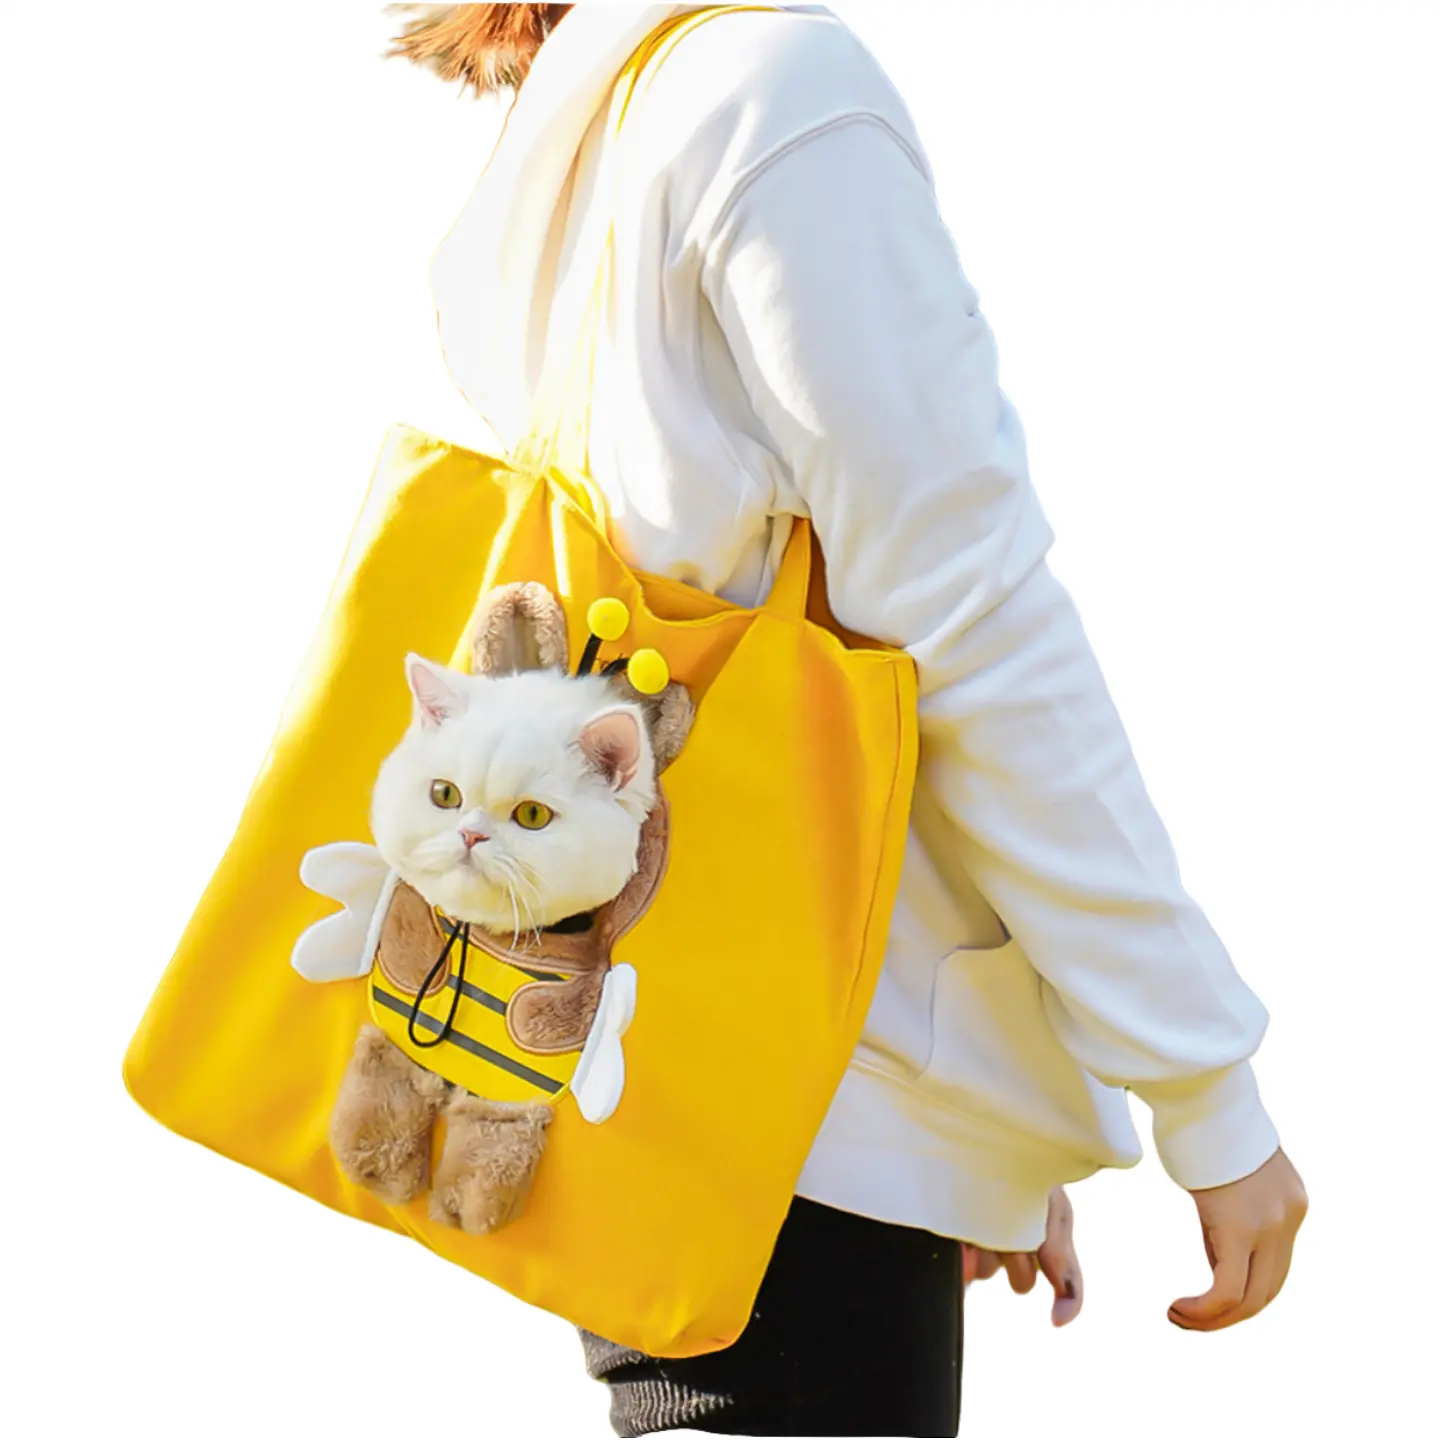 Lüks marka pet köpek taşıma çantası tasarımcı tuval açık kedi seyahat çantası yavru çanta